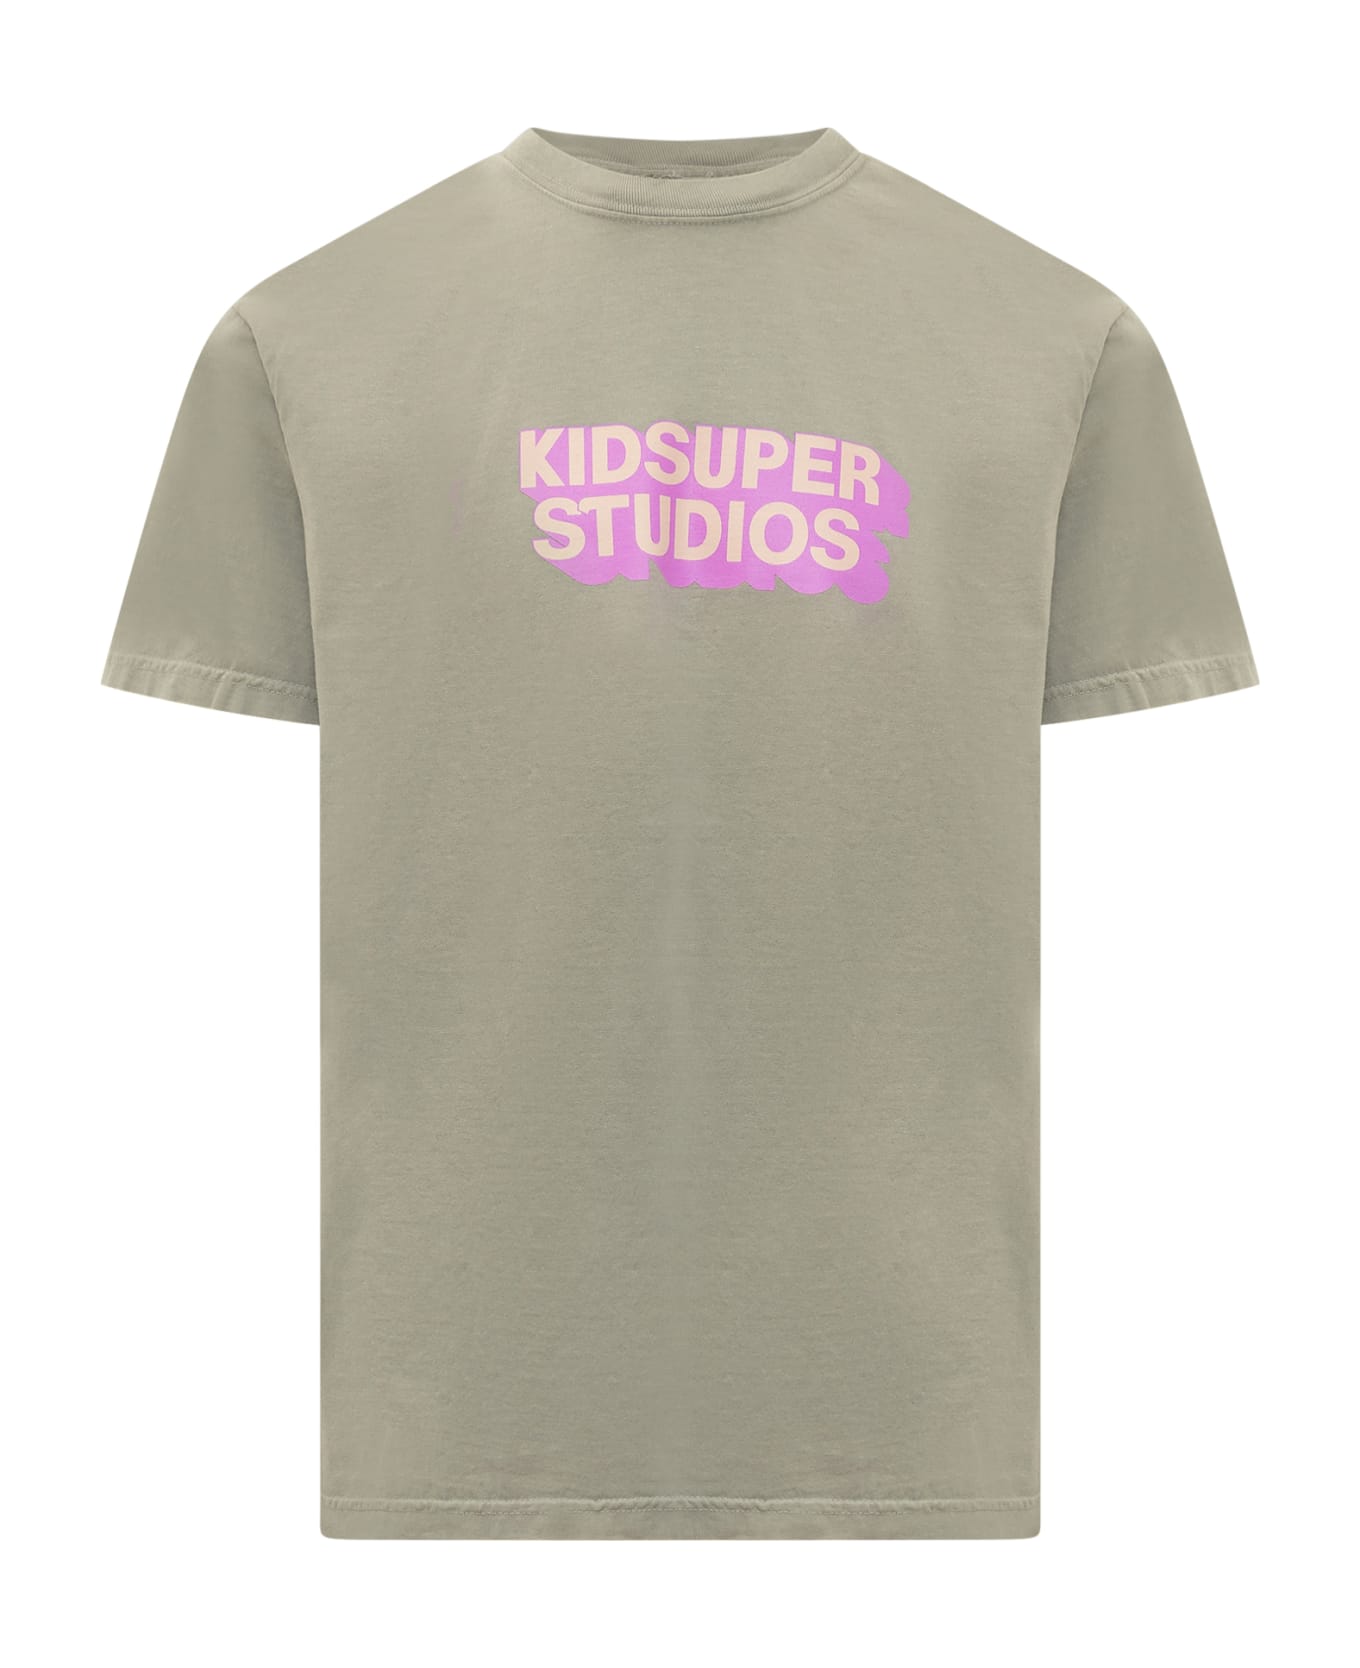 Kidsuper Studios T-shirt - TAN PINK